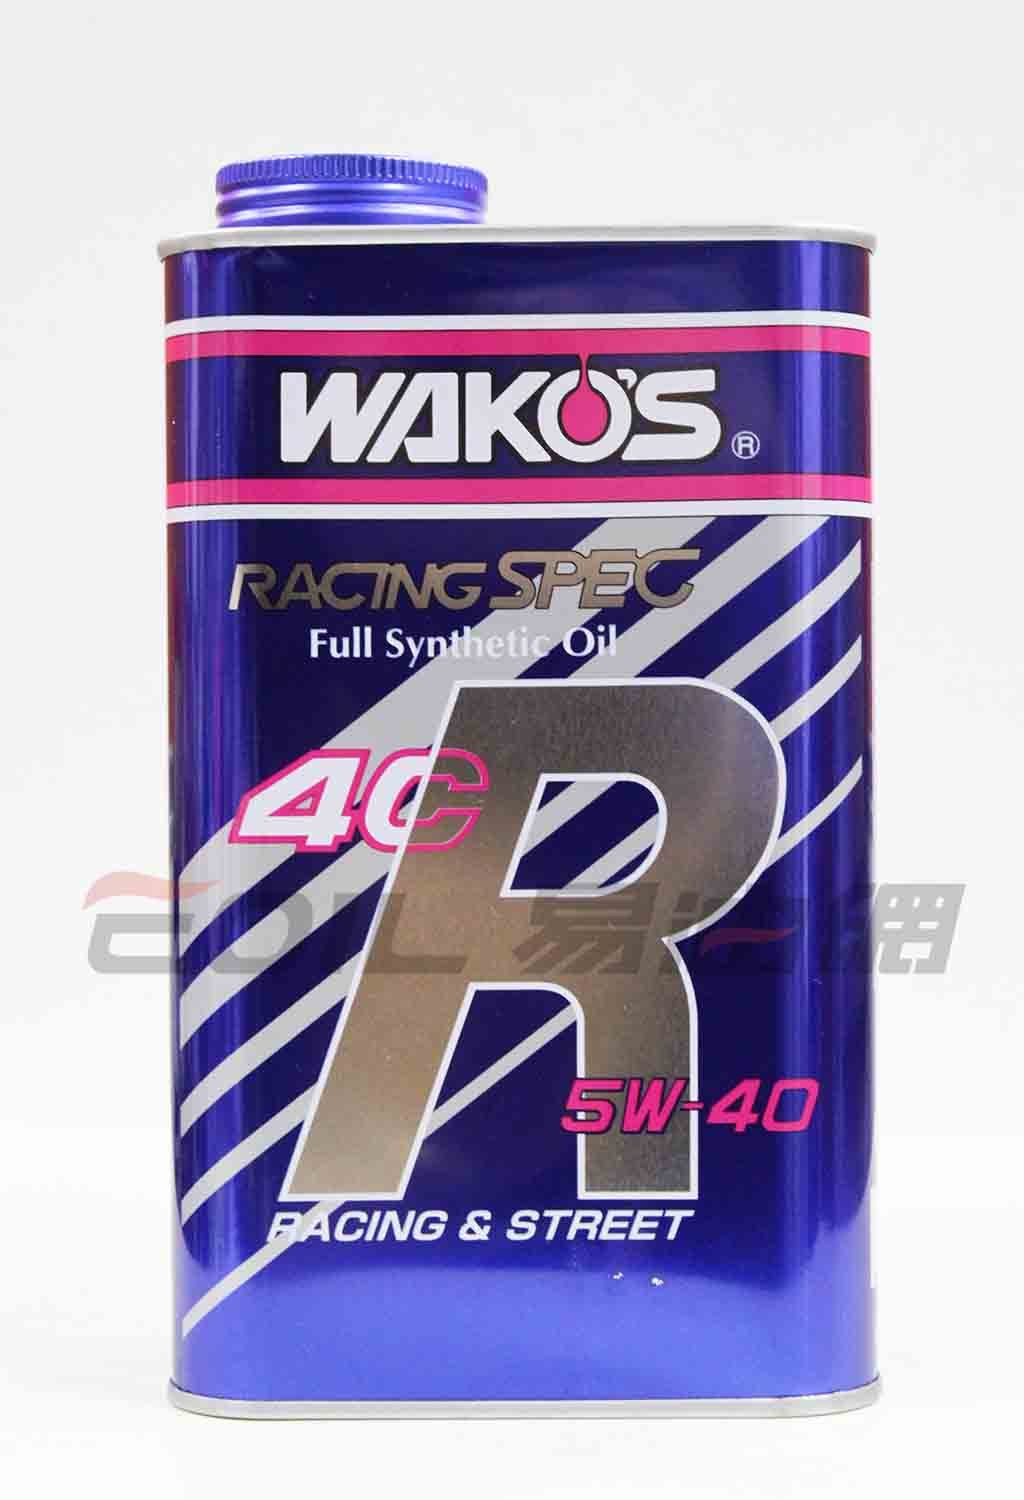 Wako's 4CR 5W40 和光 最高等級 改裝競賽用機油